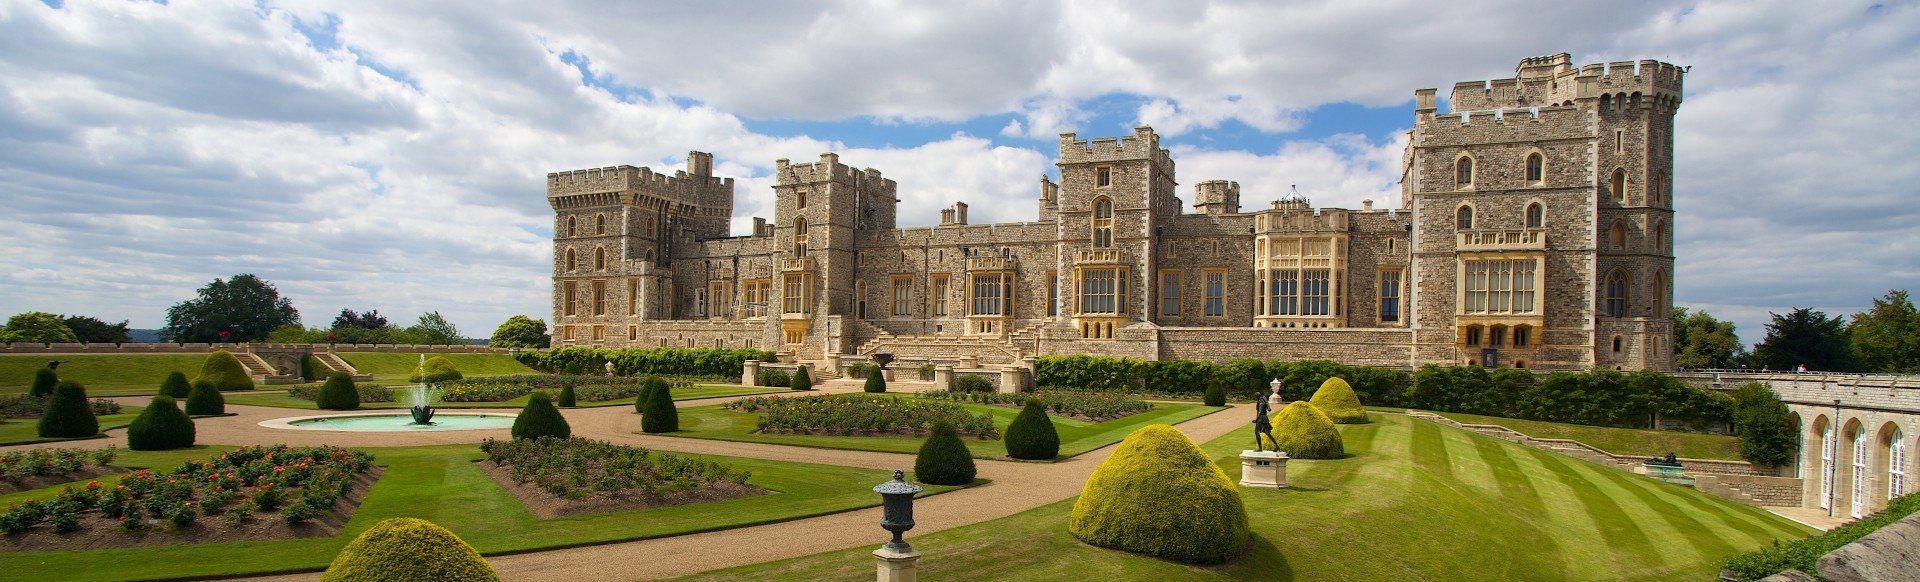 Vue sur le château de Windsor et ses jardins bien entretenus.